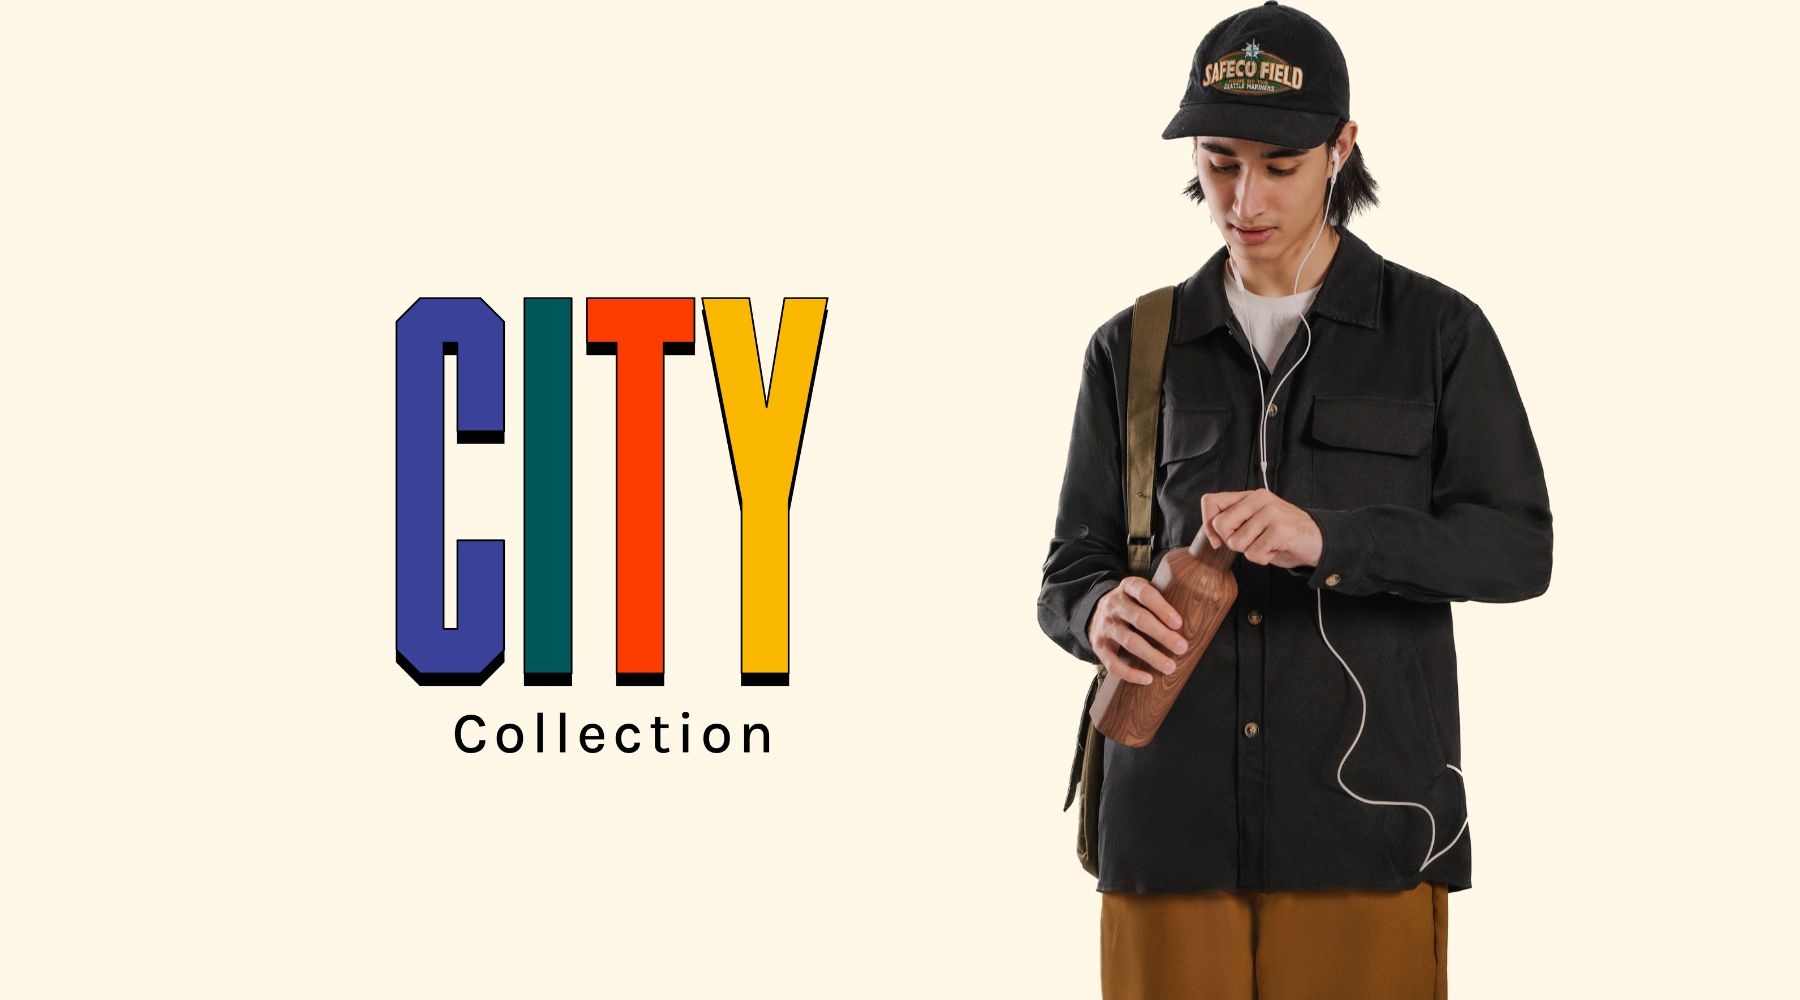 City Collection Berikan Konsep Berpakaian Modis Namun Tetap Nyaman